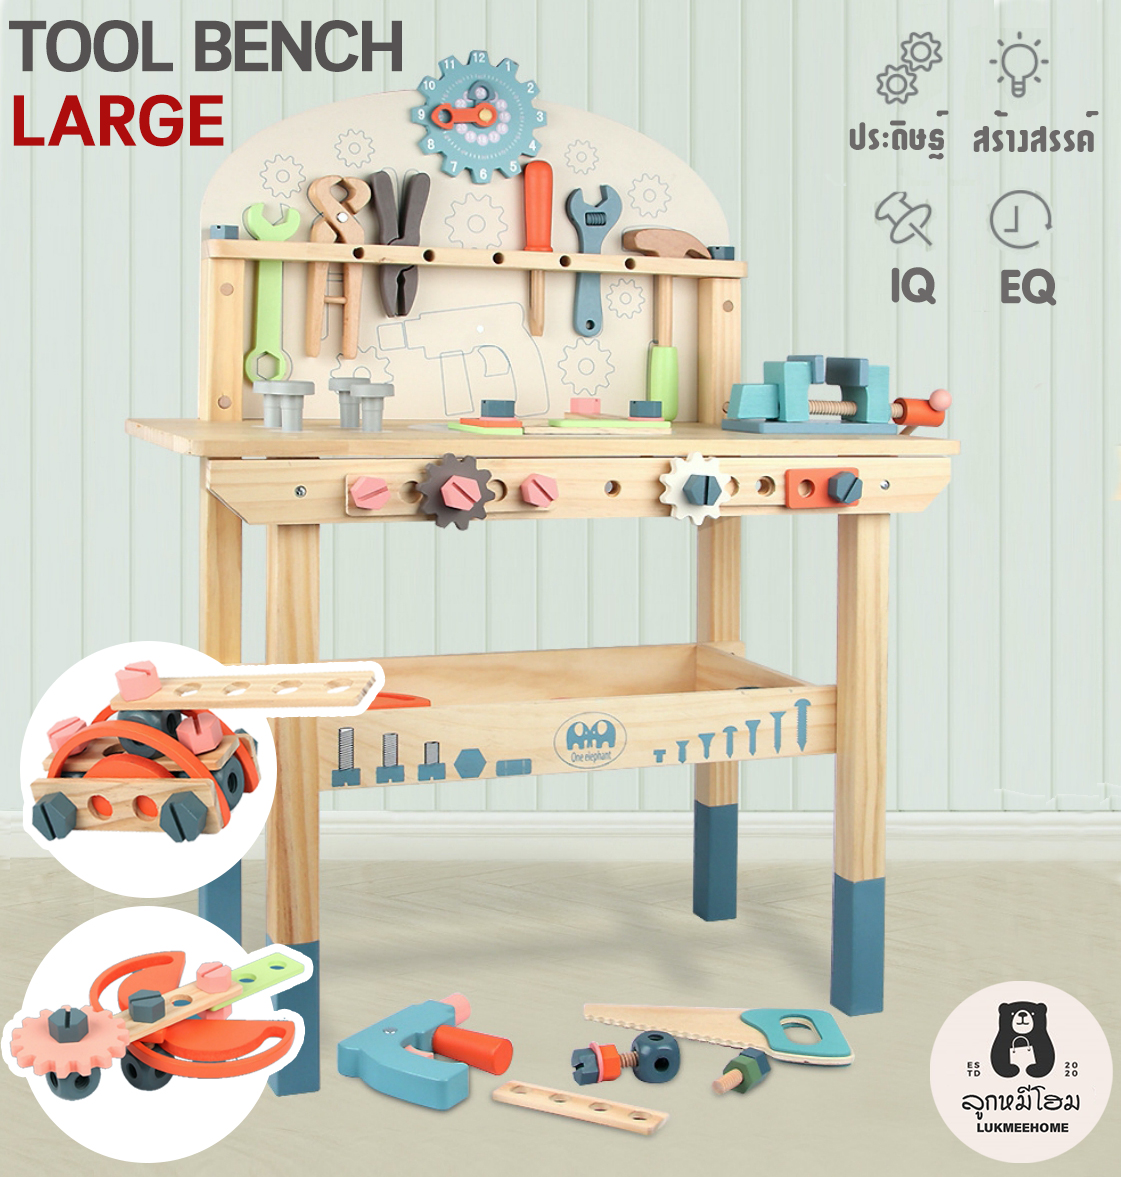 โต๊ะเครื่องมือช่าง ของเด็ก กล่องเครื่องมือ เครื่องมือช่างเด็ก ของเล่นไ ม้ของเล่นเด็ก Tool bench large